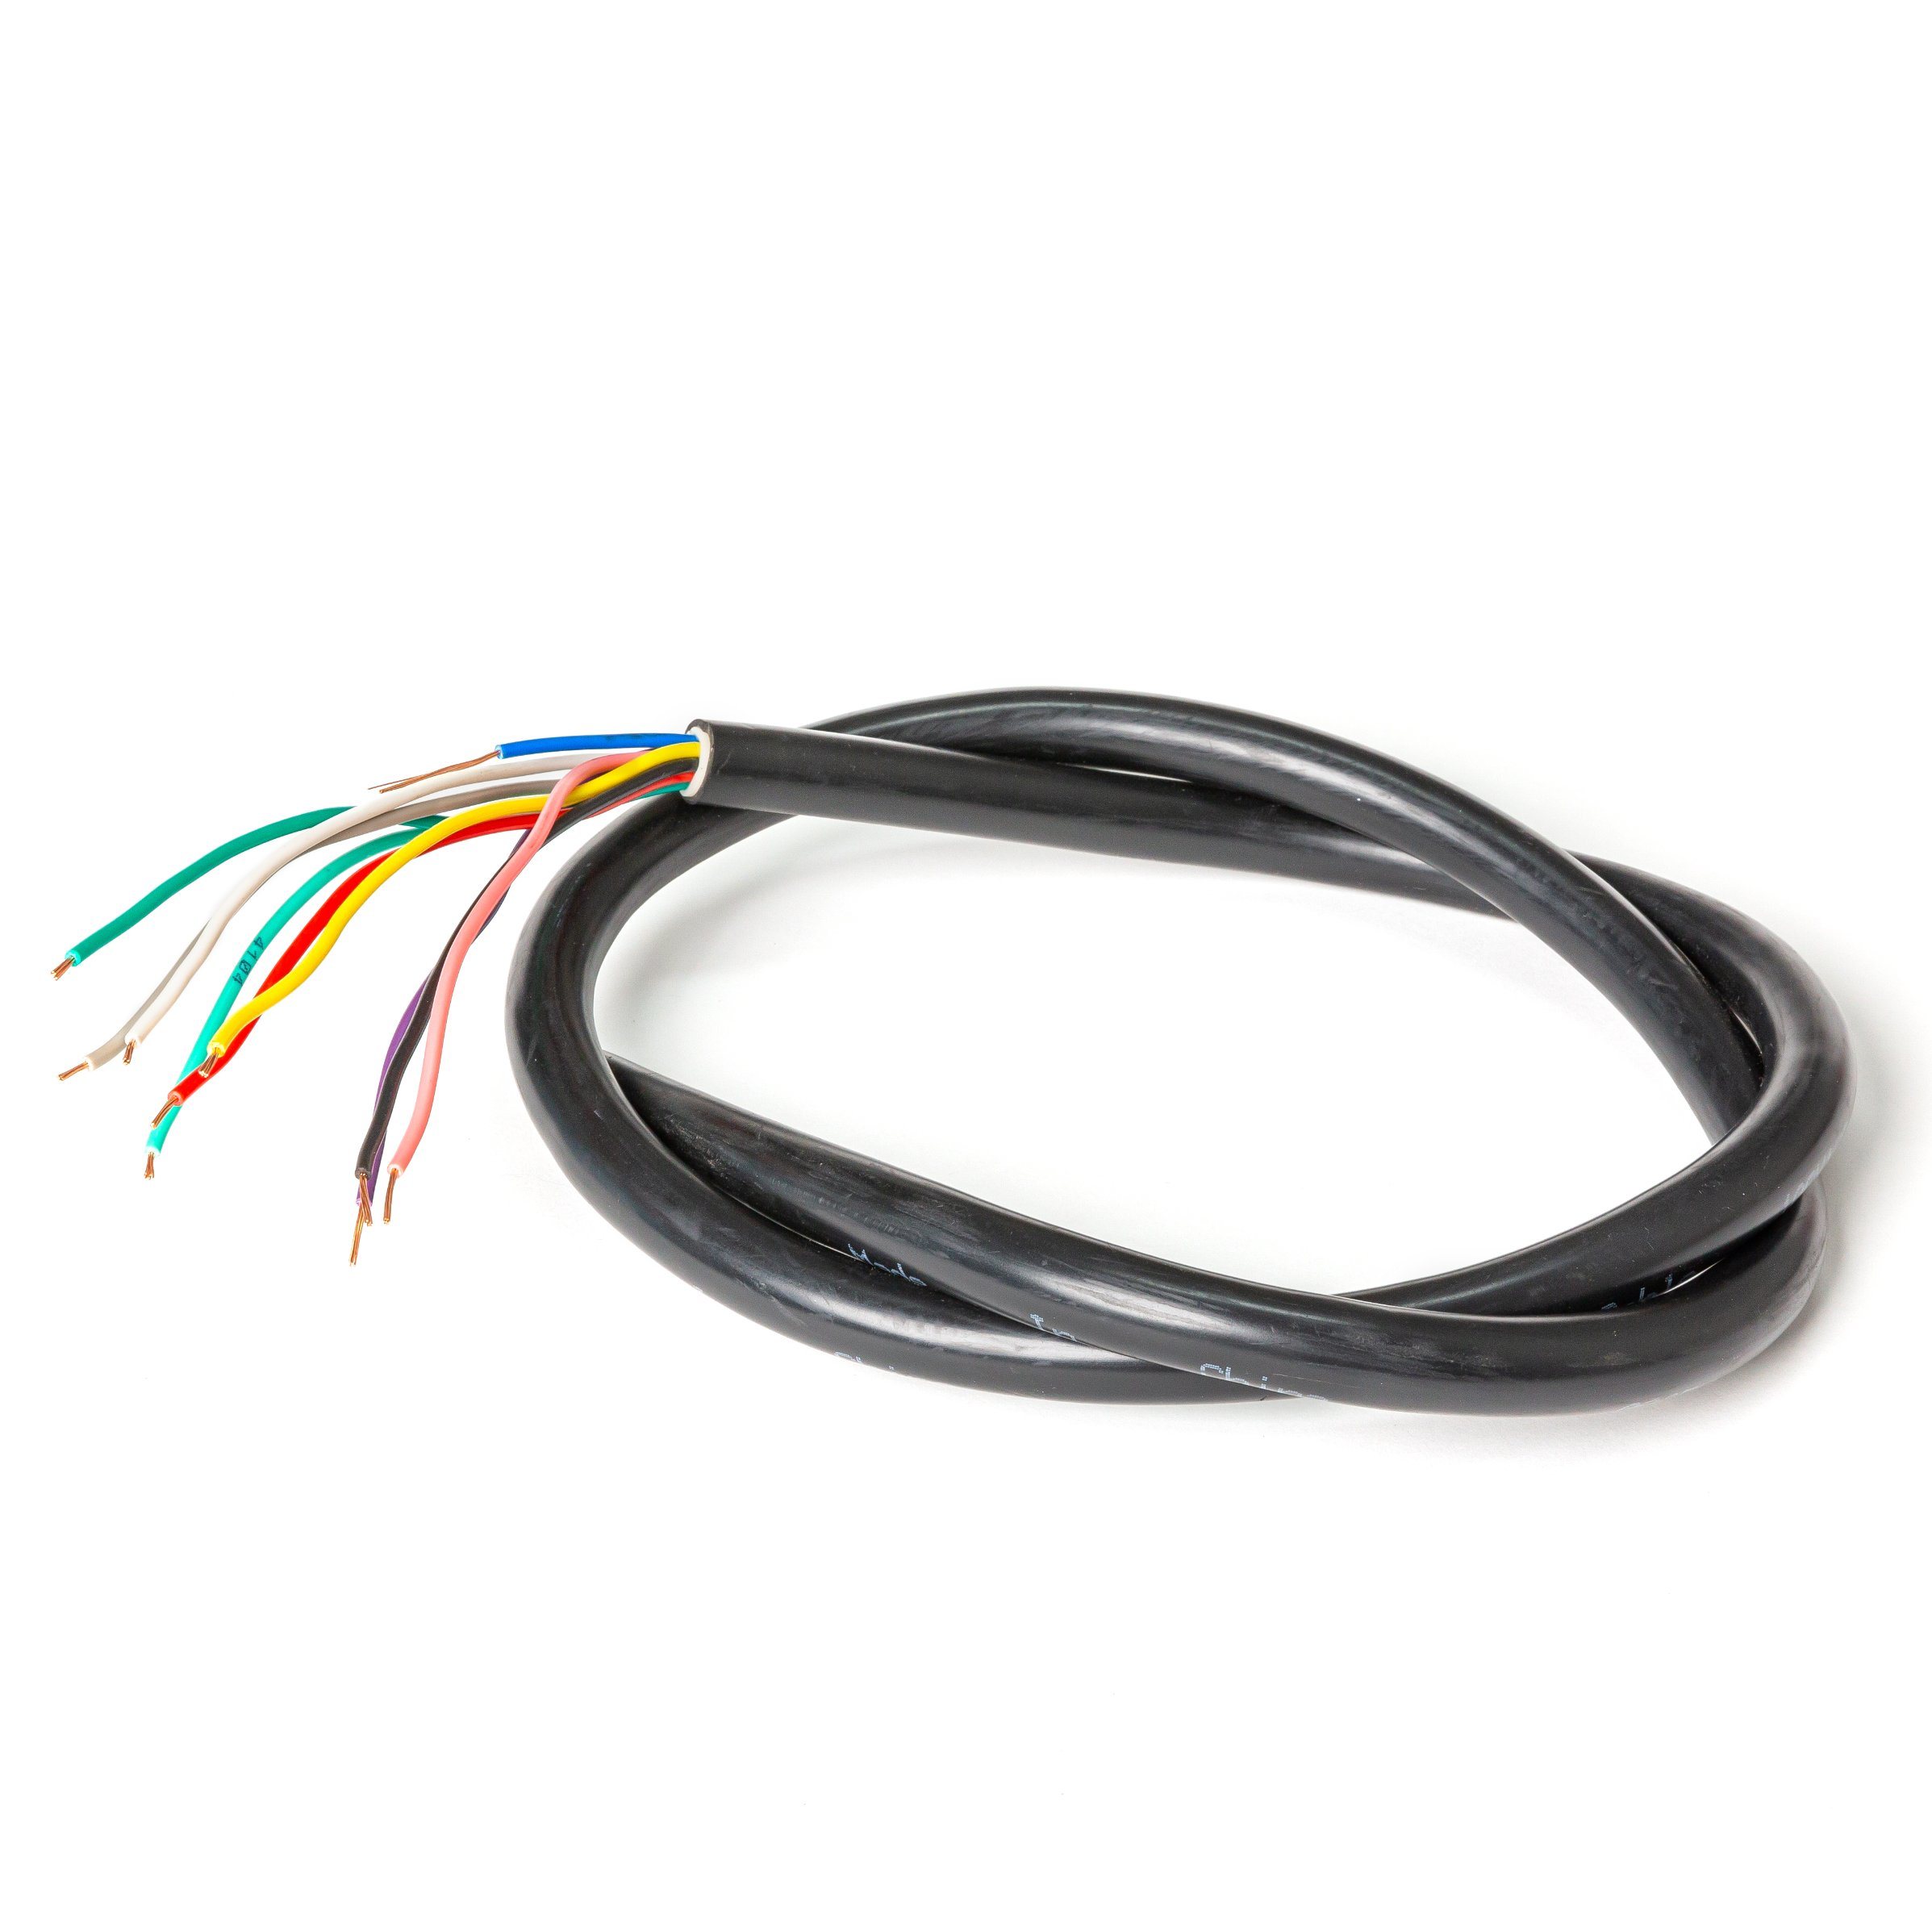 
                Многожильный гибкий управляющий ПВХ/ПВХ кабель 75° C 300/500 В.
            